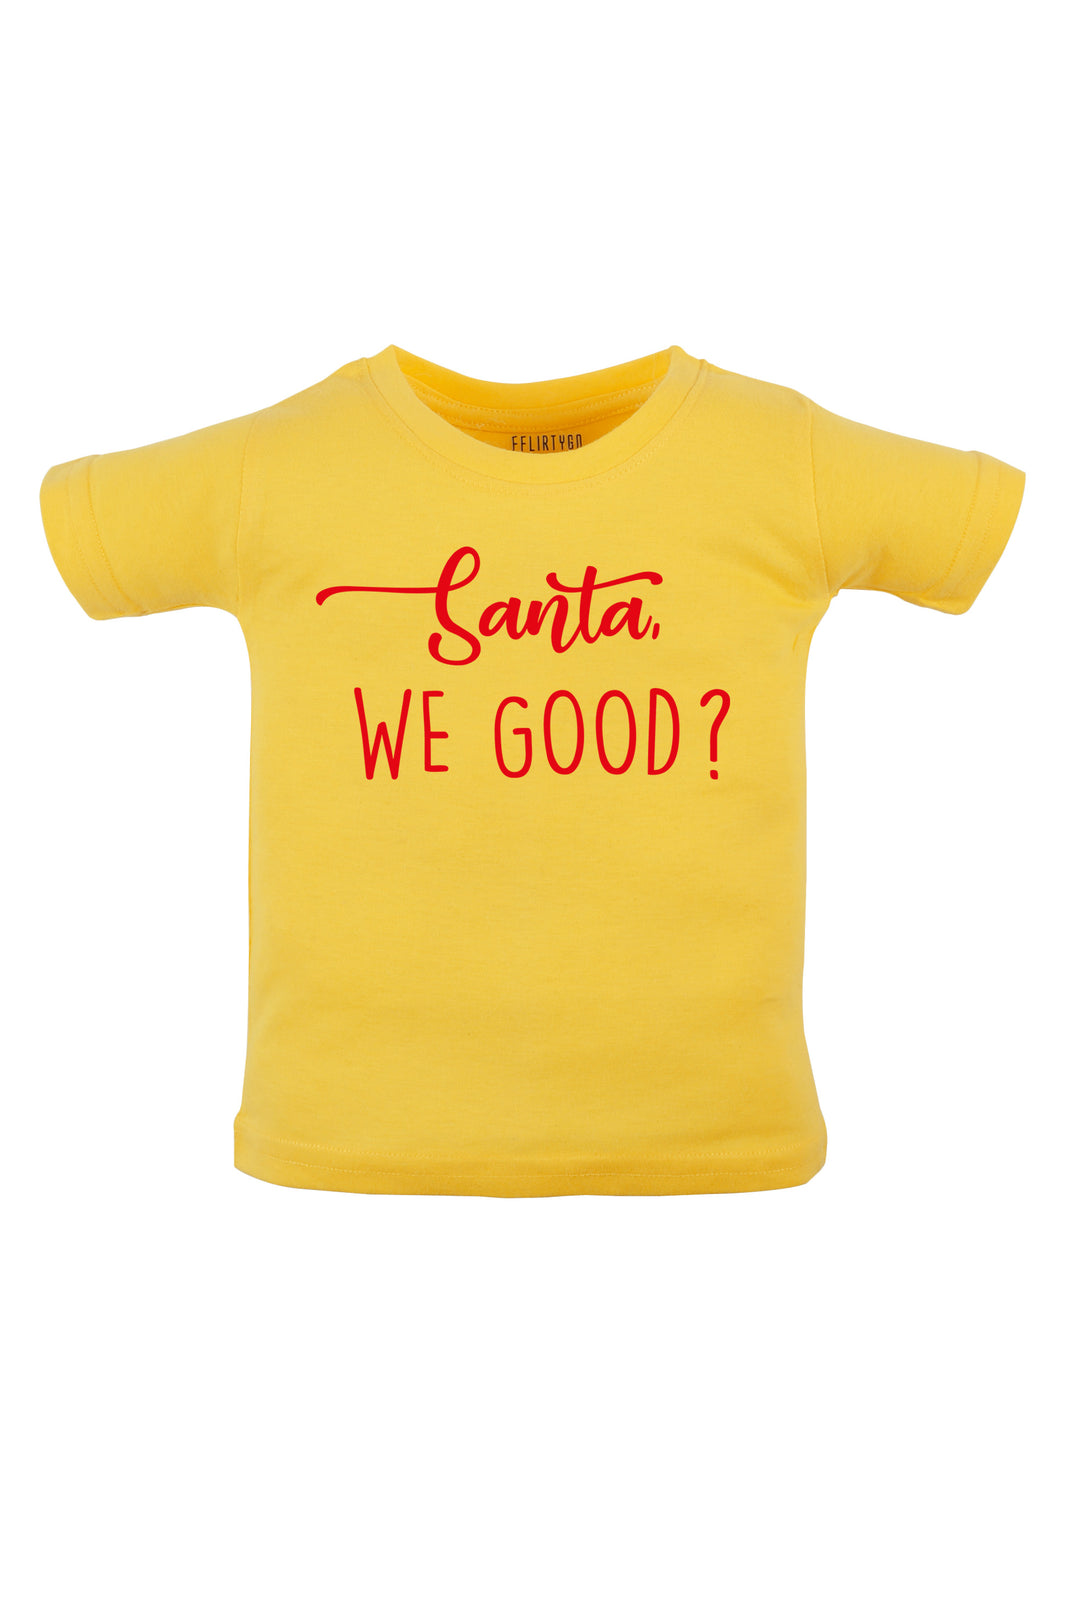 Santa, We Good ? Kids T Shirt